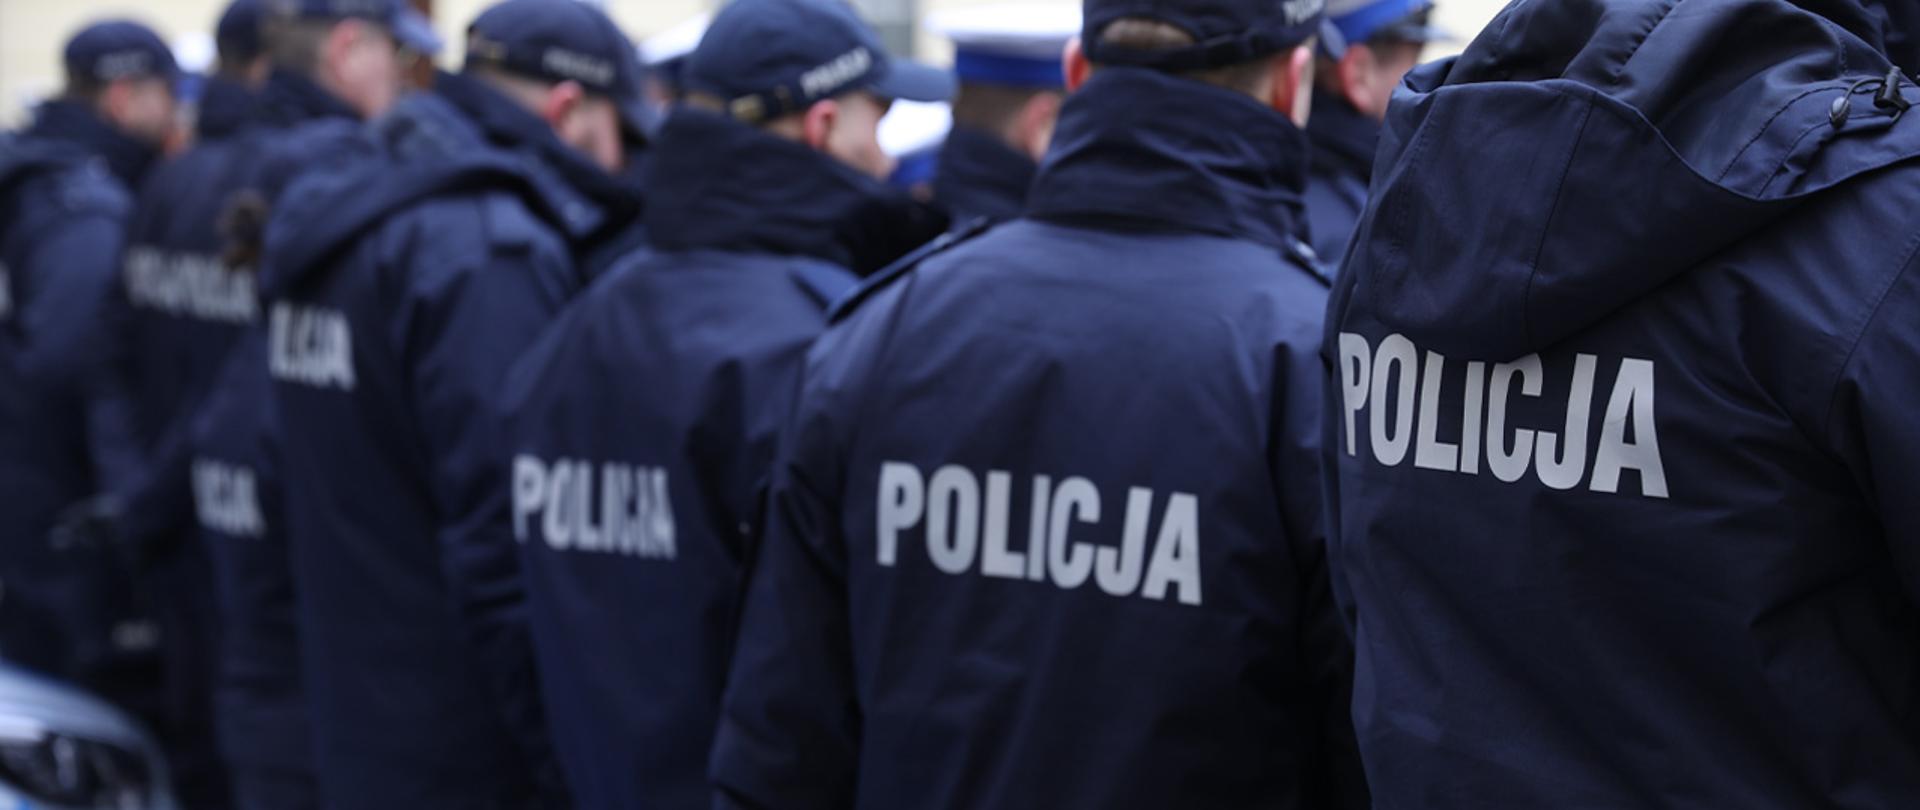 Na zdjęciu widać stojących w rzędzie policjantów w kurtkach z widocznym na plecach napisem "POLICJA". 